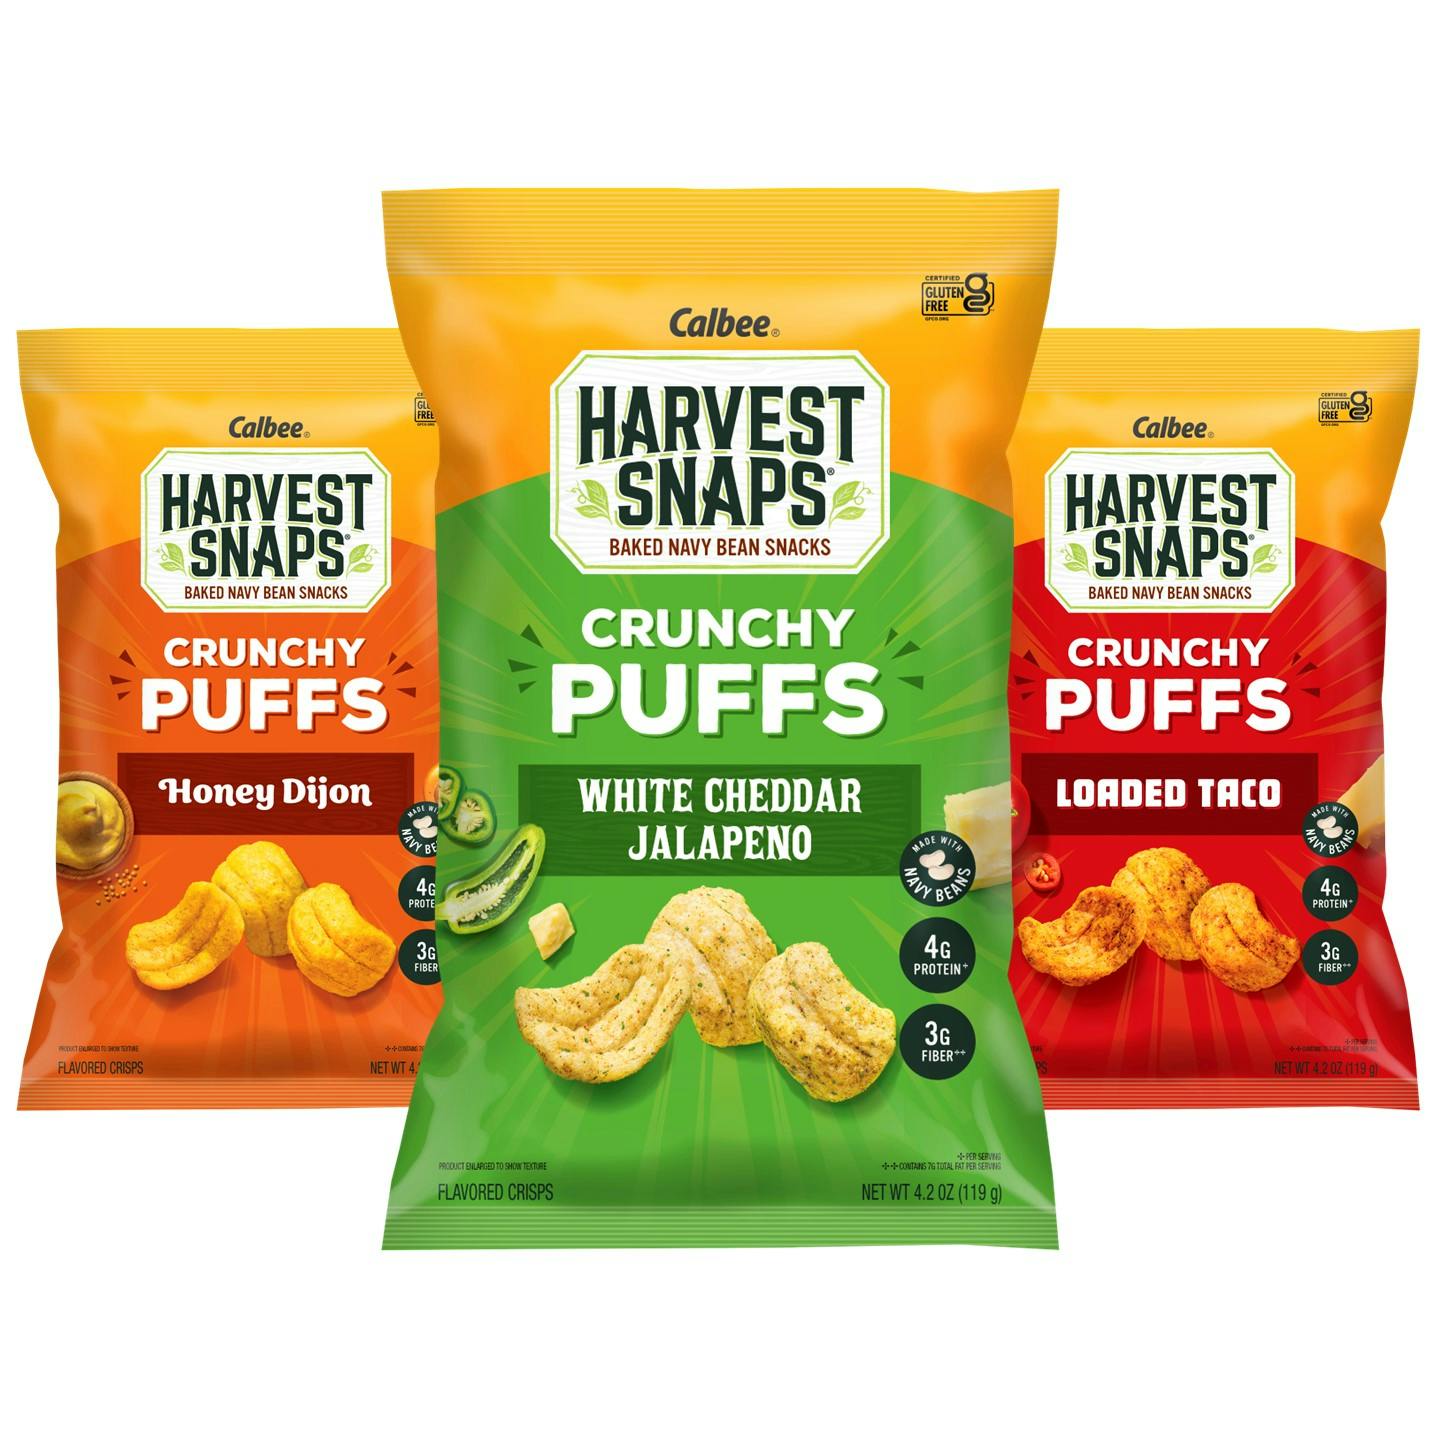 Harvest Snaps Crunchy Puffs